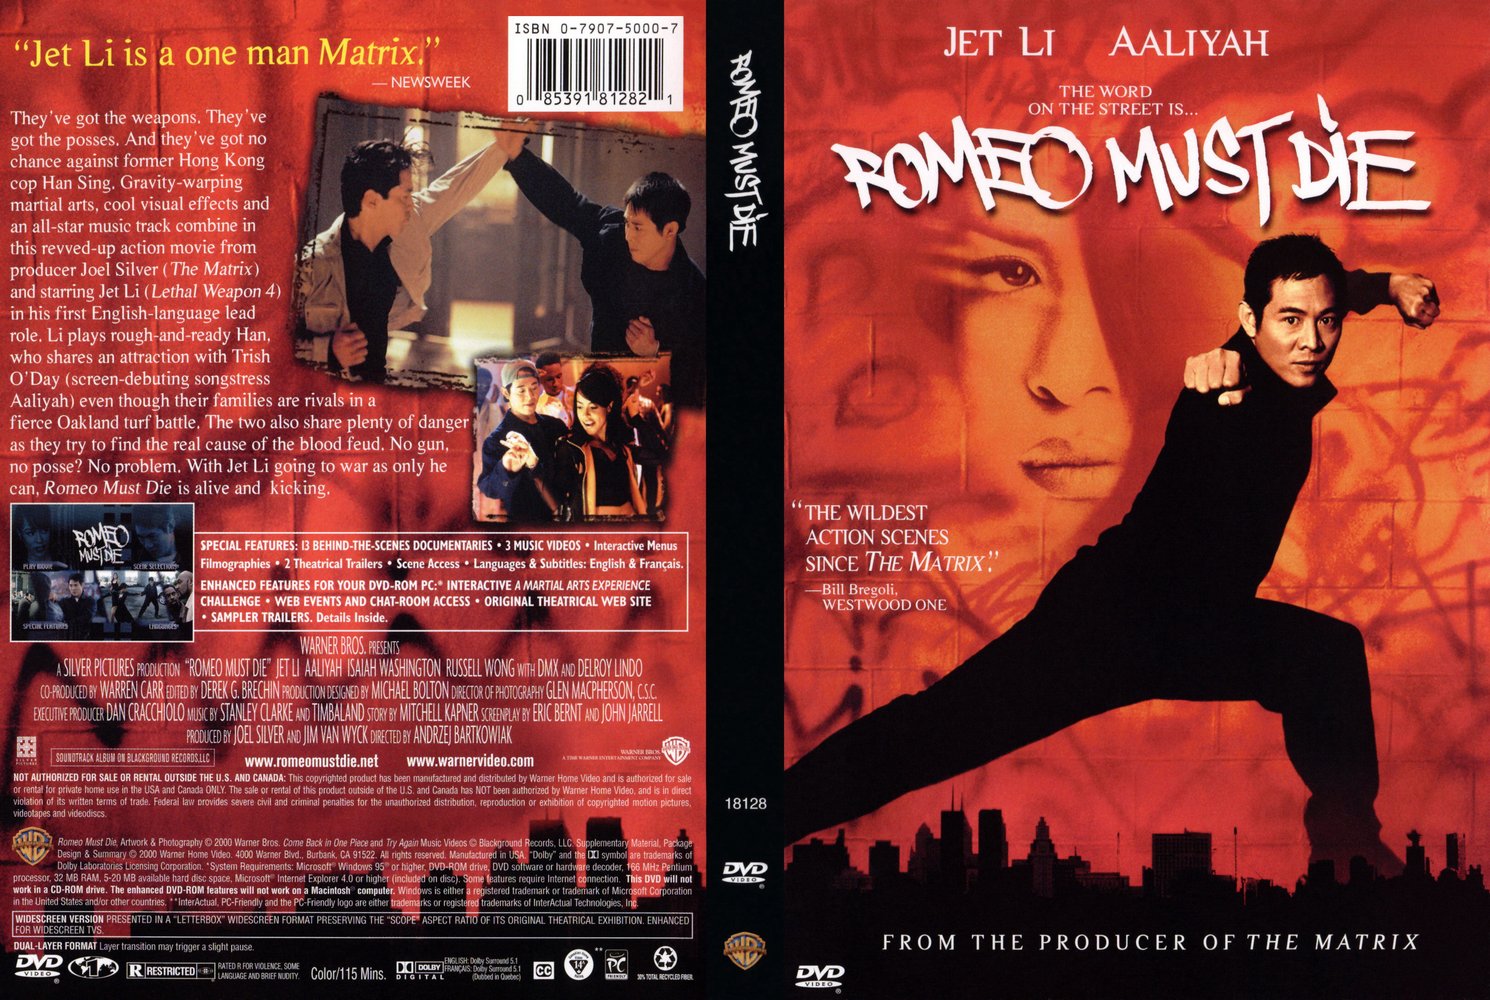 ロミオ・マスト・ダイ／Romeo Must Die（1999）